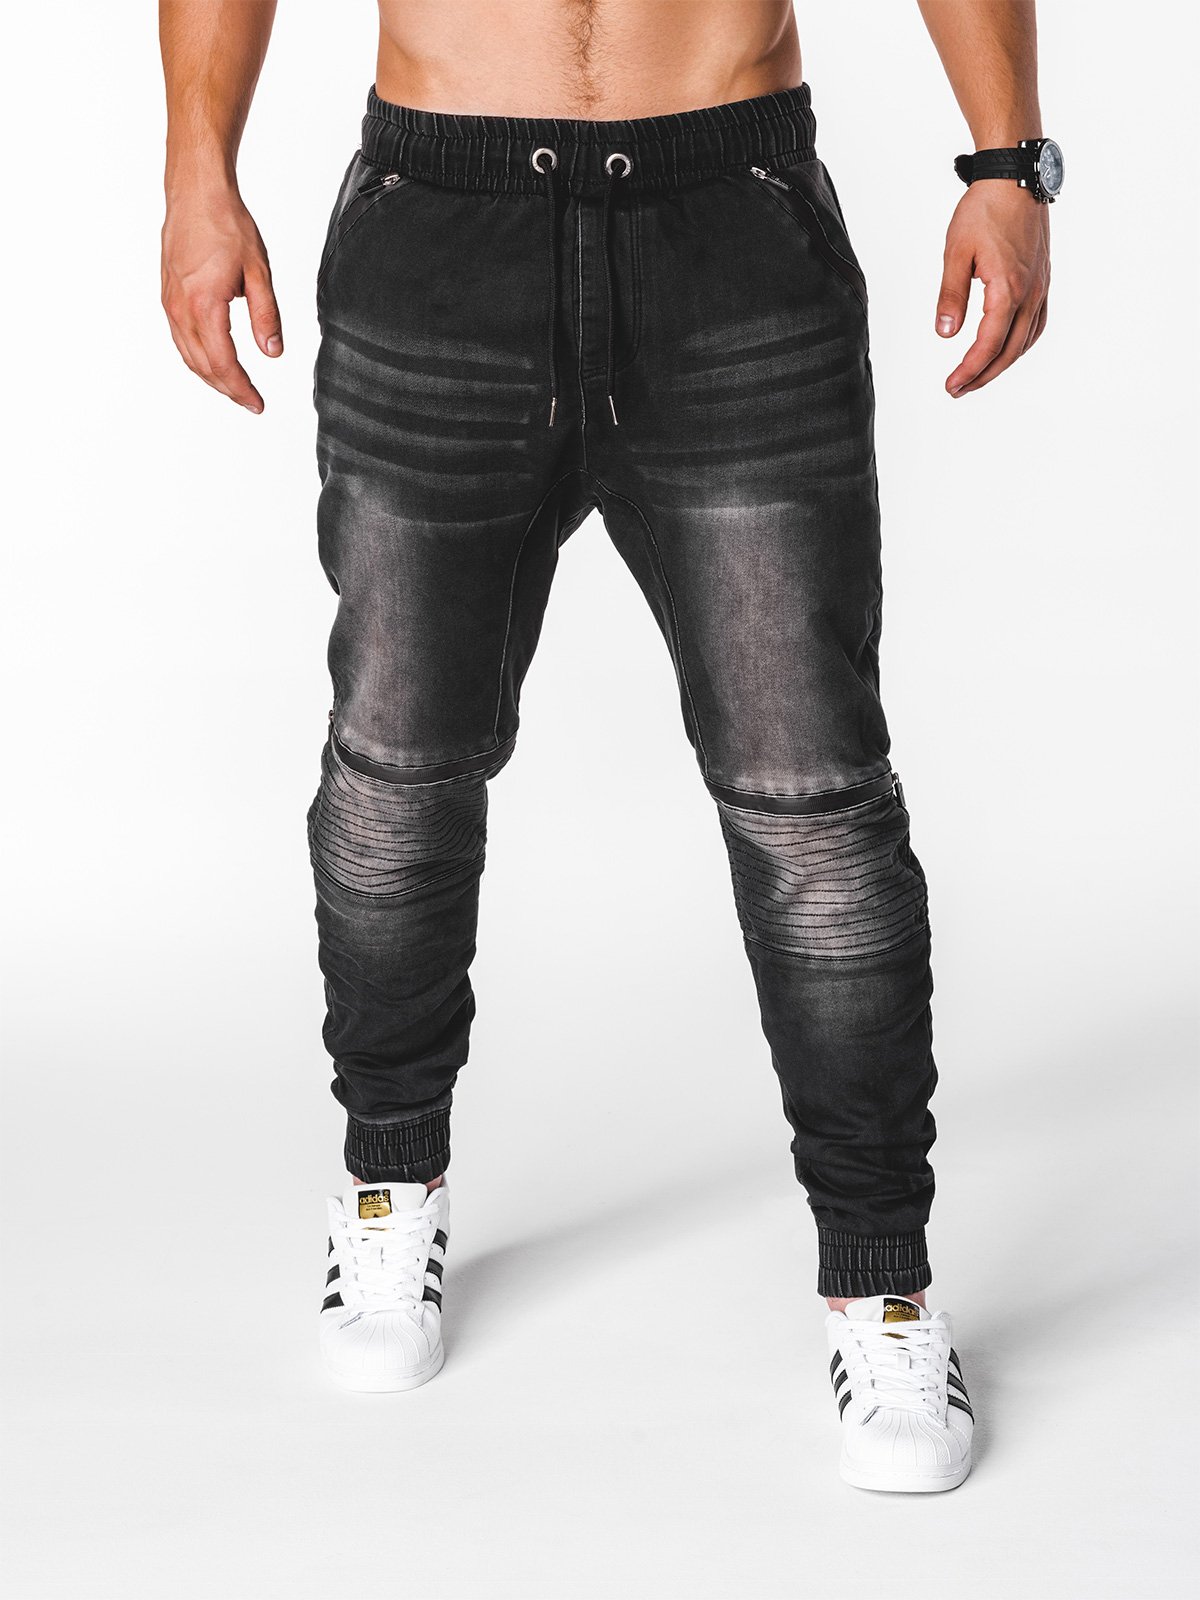 Men's jeans joggers P651 - black | MODONE wholesale - Clothing For Men